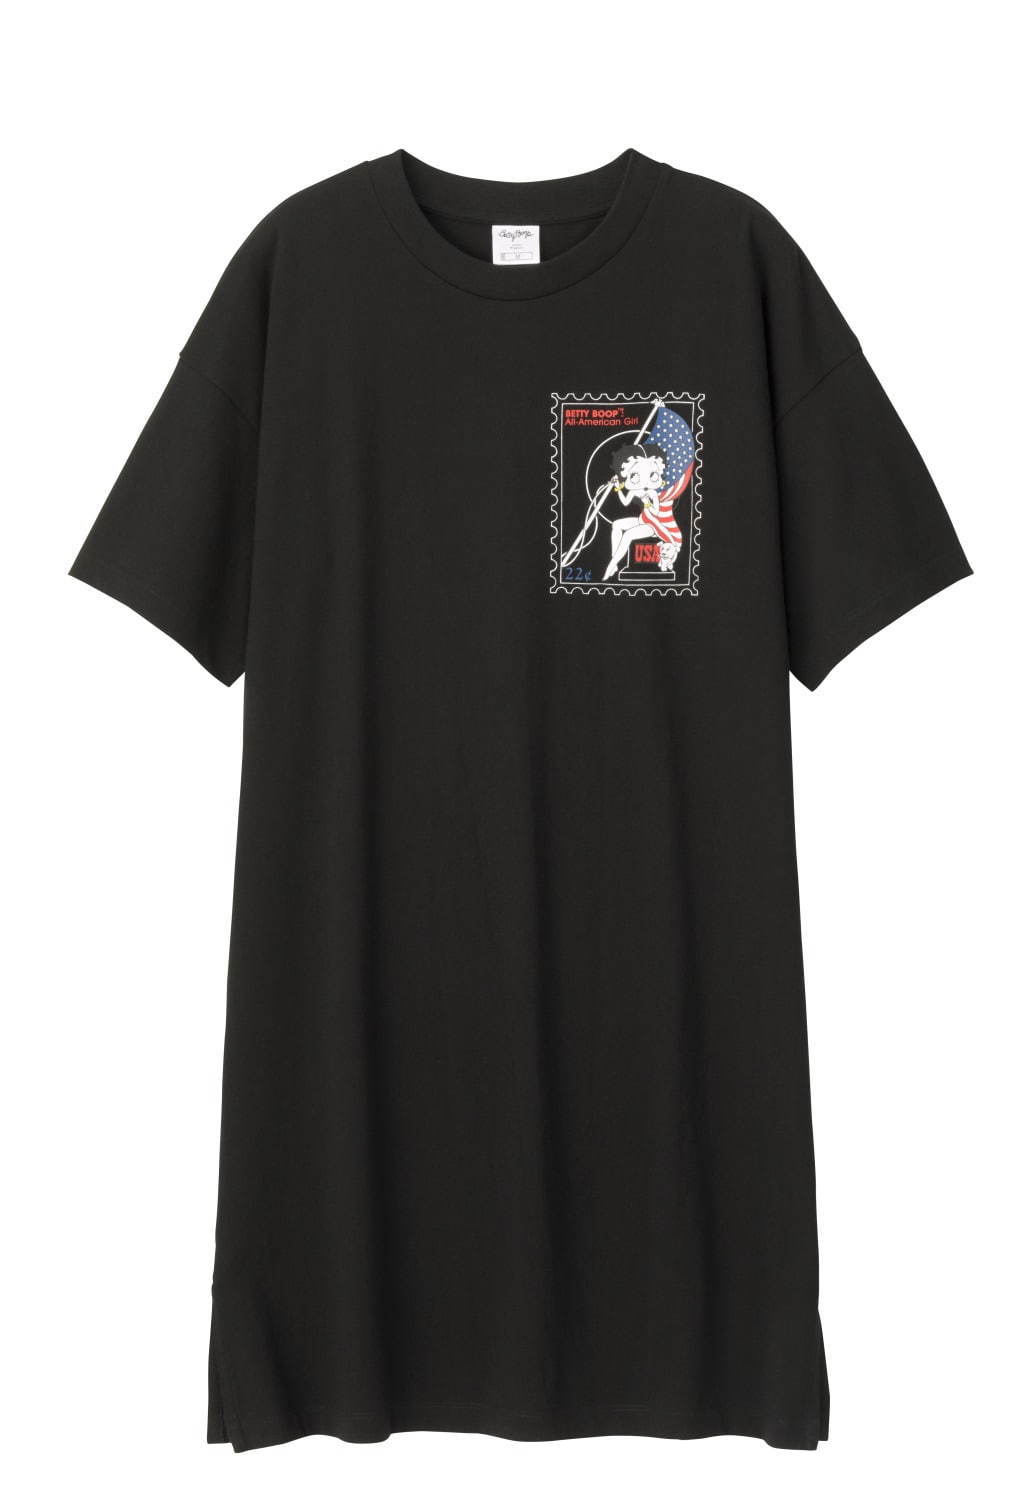 Gu ベティー ブープ オリーブ 初コラボtシャツ 人気キャラのイラスト ロゴを配して ファッションプレス